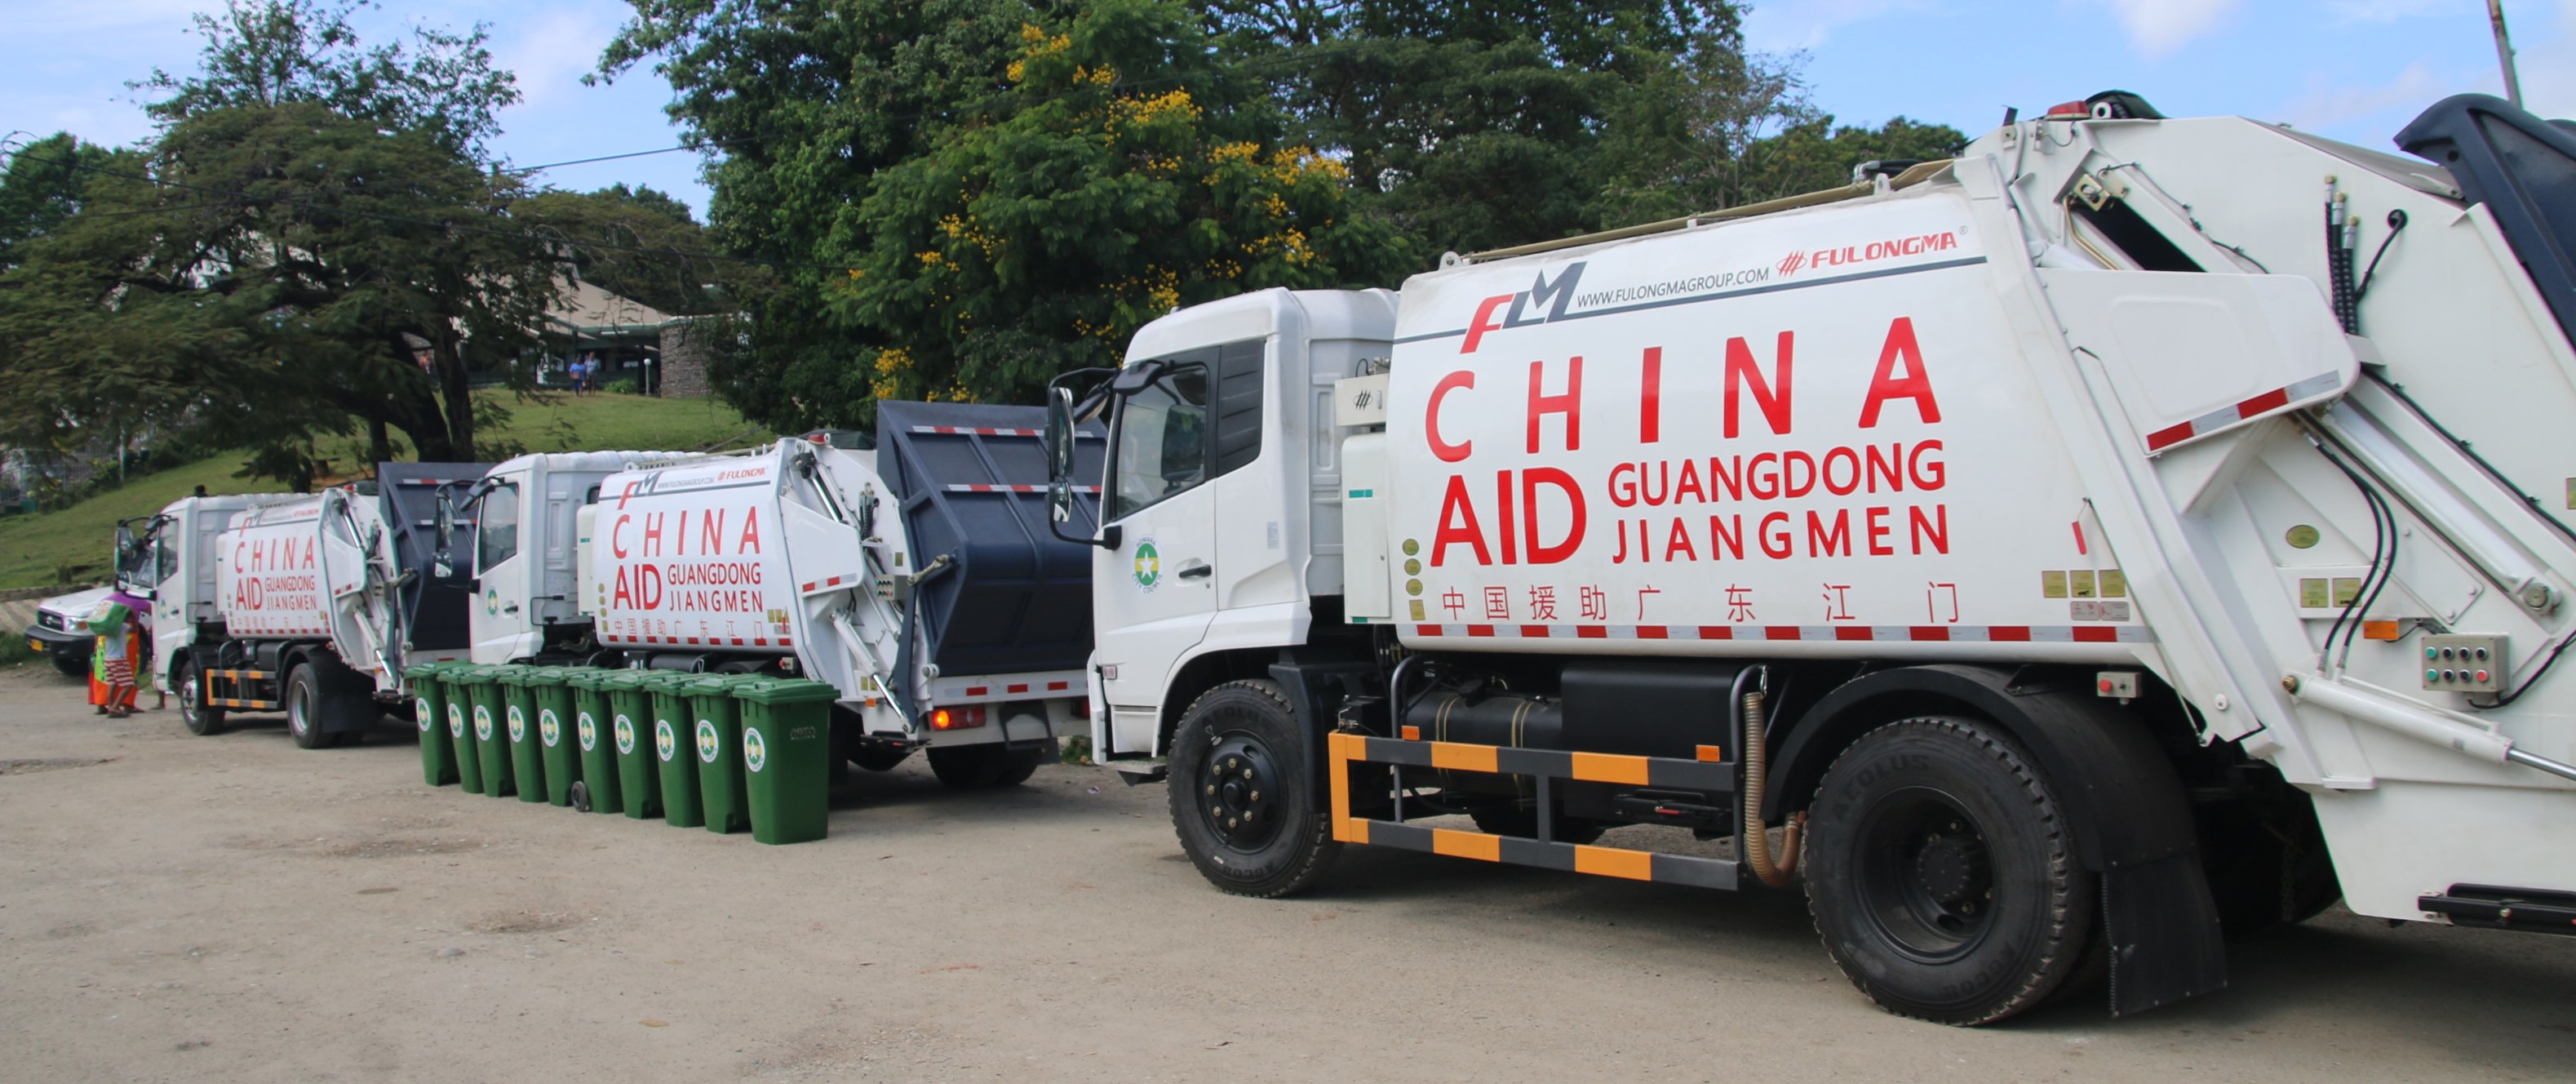 جمهورية الصين الشعبية تتبرع بثلاث شاحنات قمامة من فولونغما و 200 حاوية إلى HCC.